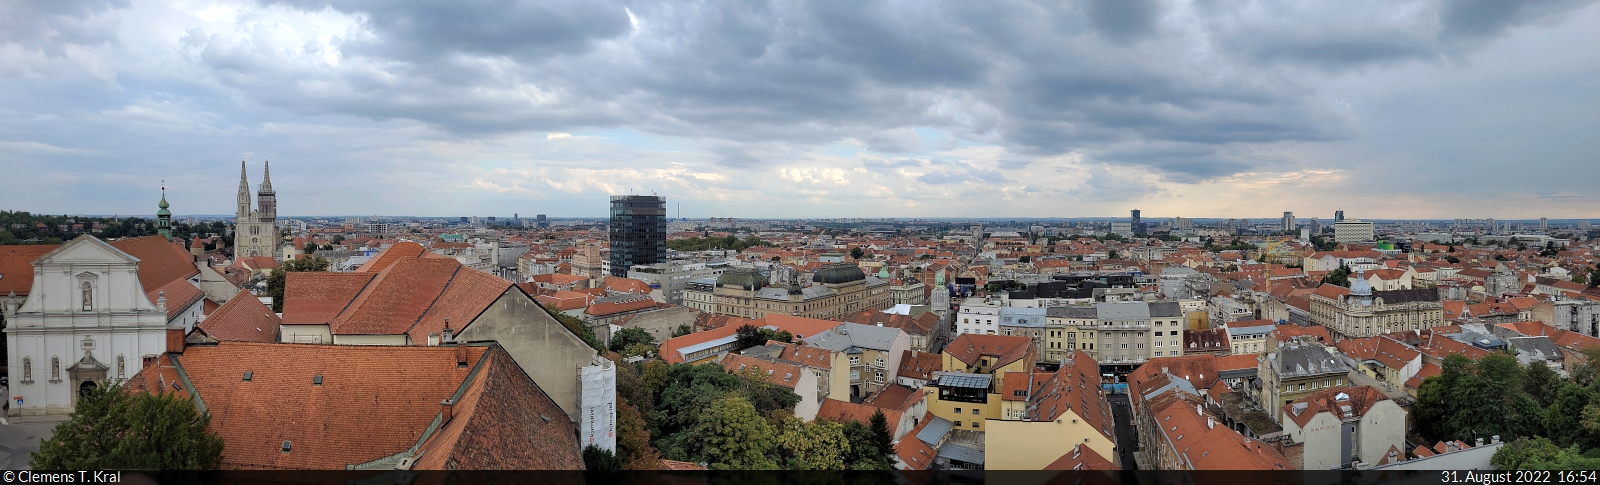 Zagreb (HR):
Aussicht vom Lotrčak-Turm Richtung Unterstadt. Am linken Bildrand erheben sich u.a. die beiden Trme der Kathedrale.

🕓 31.8.2022 | 16:54 Uhr